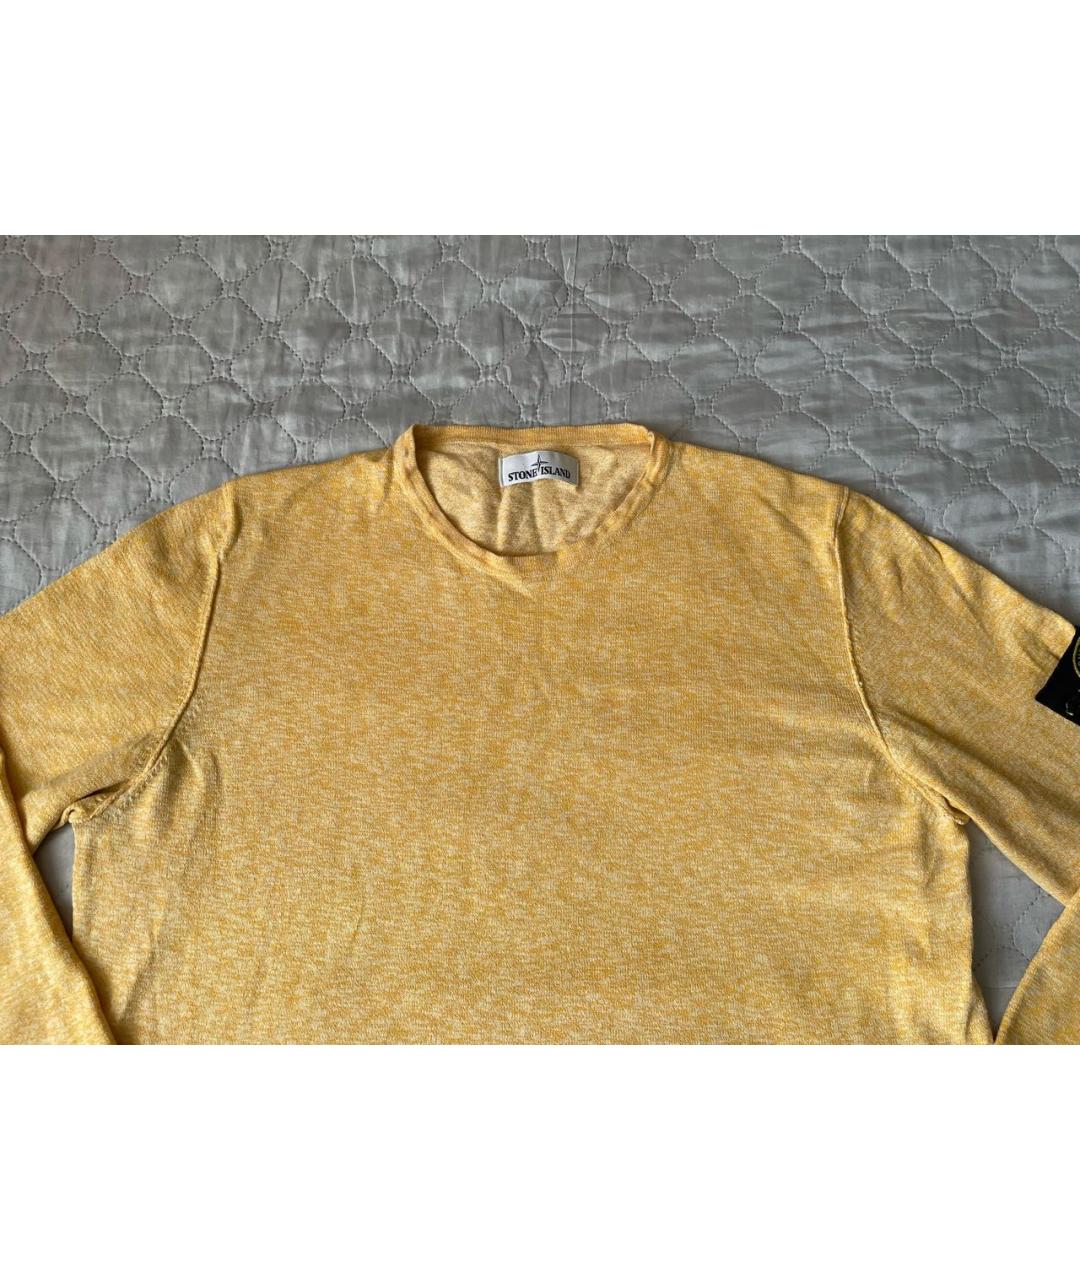 STONE ISLAND Желтый хлопковый джемпер / свитер, фото 2